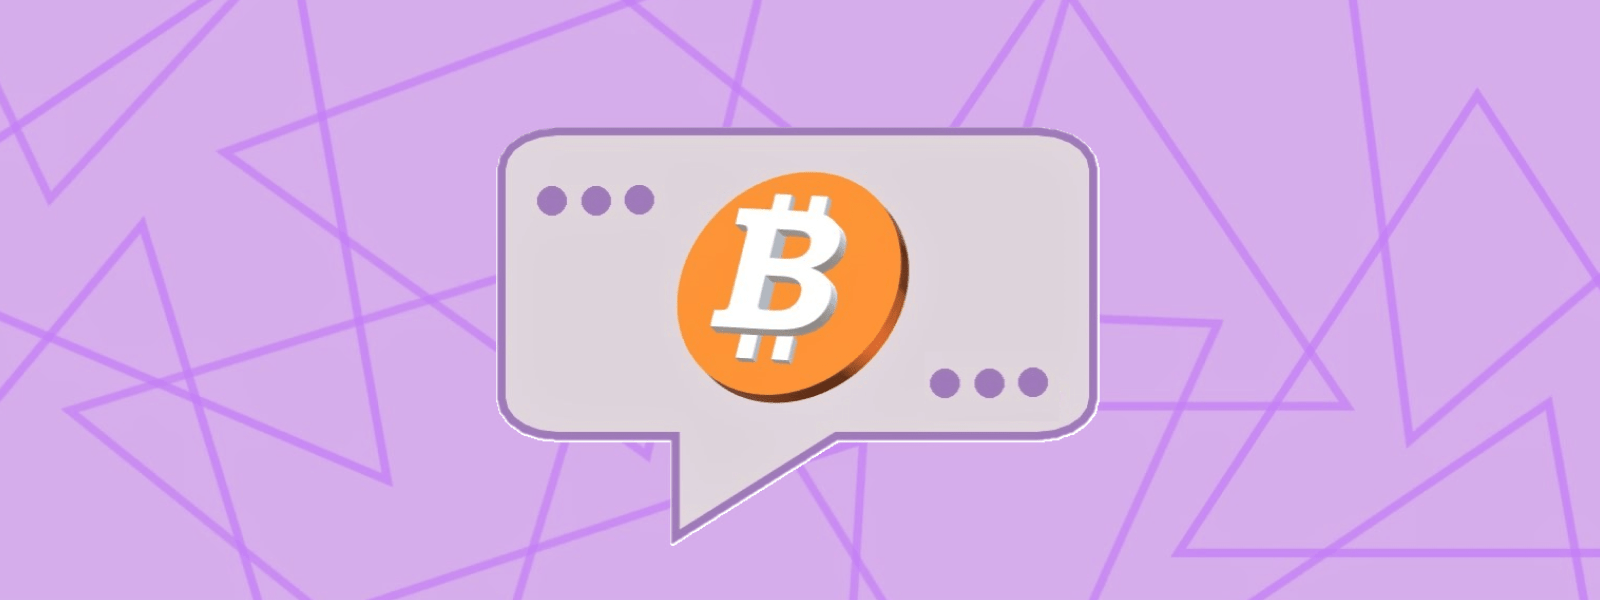 Text balloon containing a bitcoin.